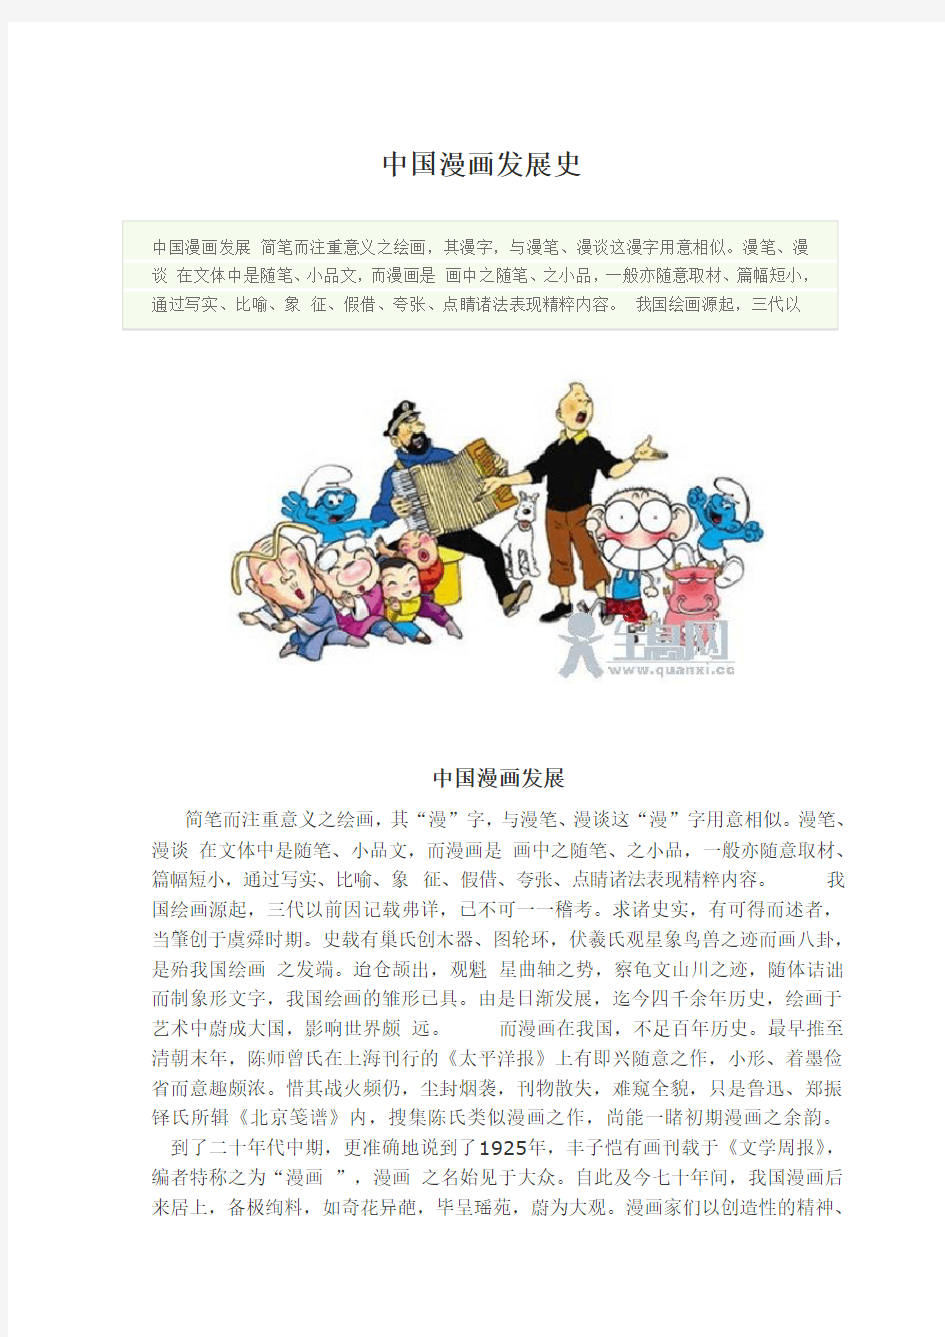 中国漫画发展史